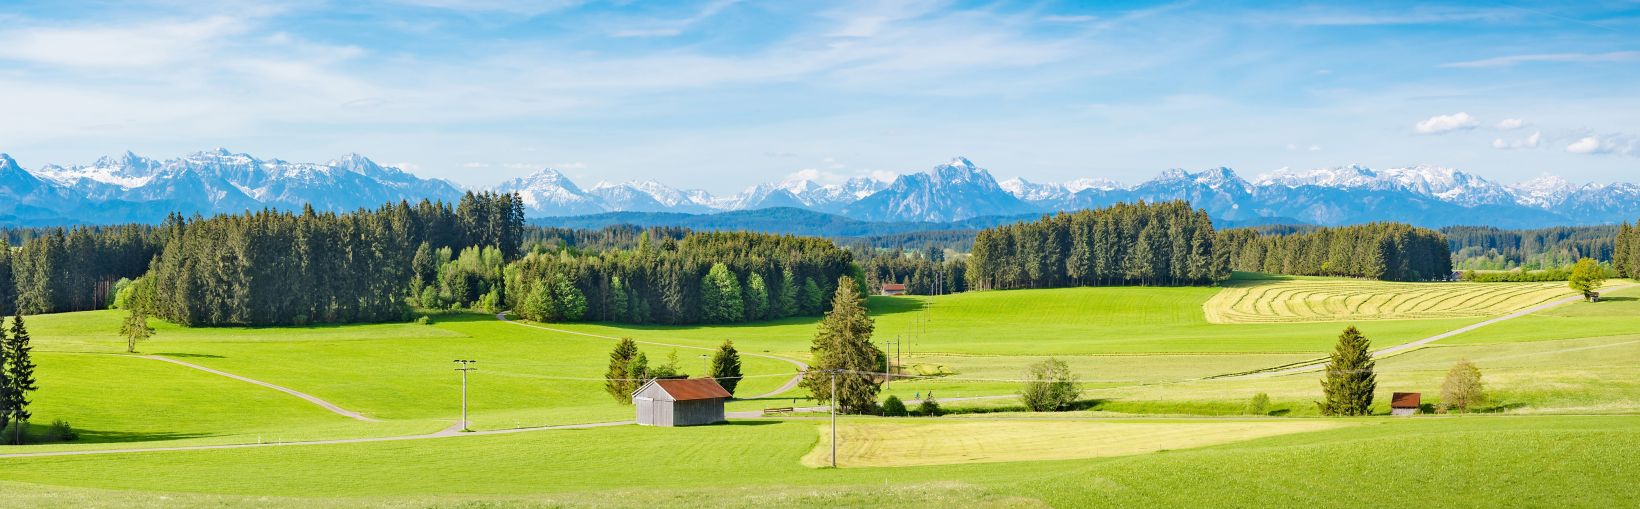 Allgäu, bâtiments agricoles au toit rouge sur un vaste paysage verdoyant de champs et de forêts avec une toile de fond spectaculaire de montagnes enneigées à l’horizon